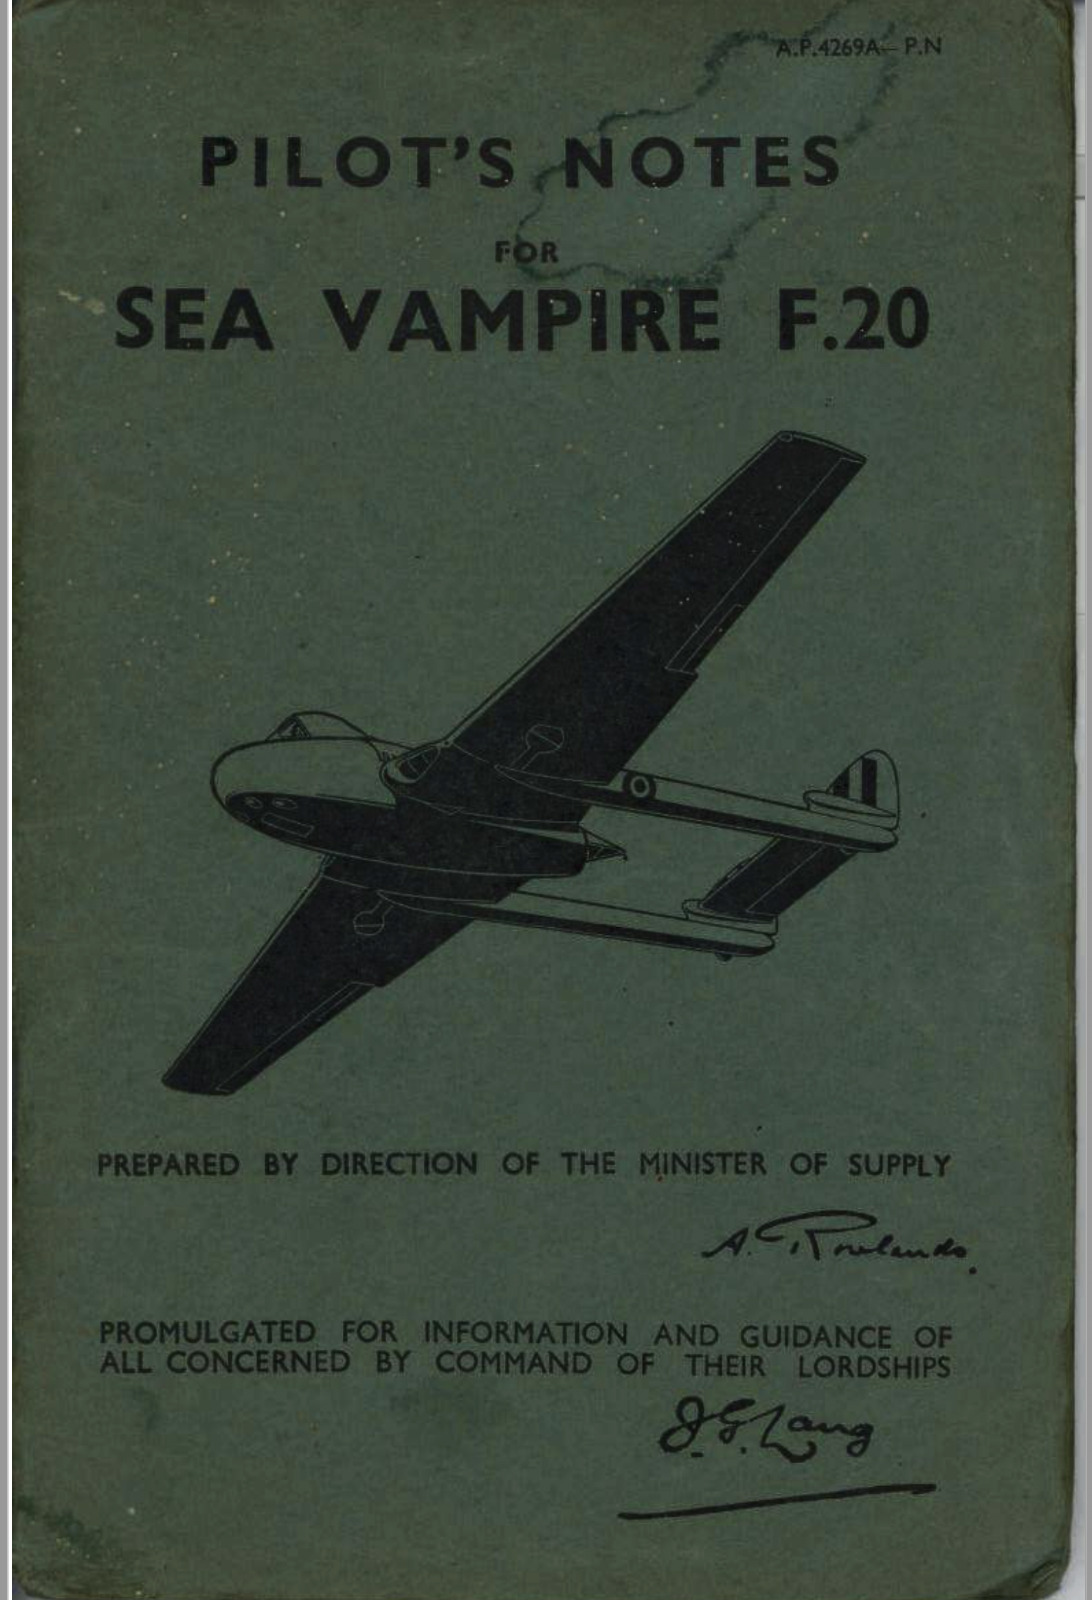 43 Page 1951 De Havilland Sea Vampire F.20 Pilot\'s Notes Flight Manual on CD